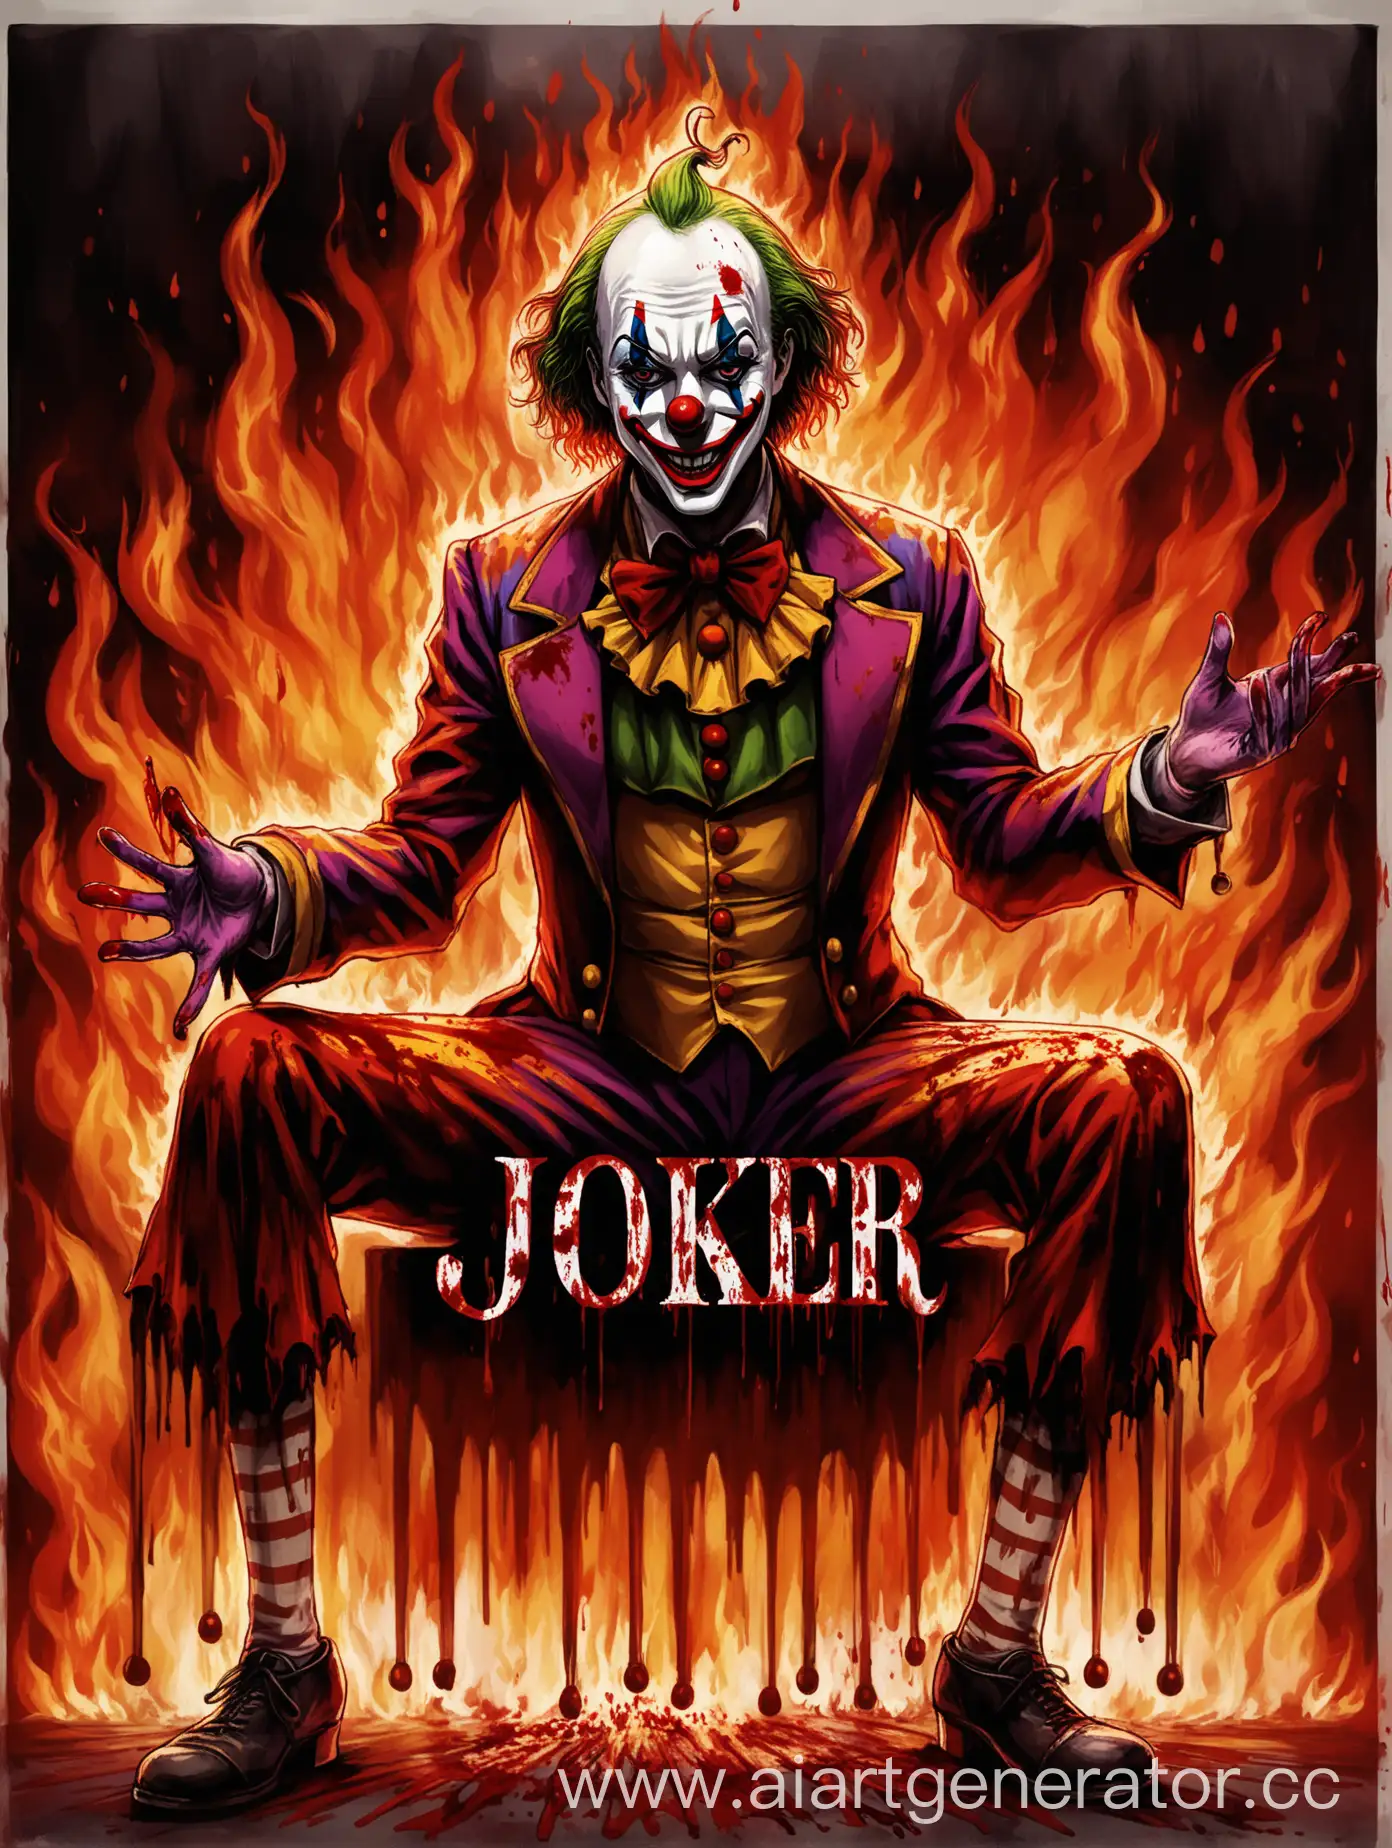 Клоун в крови выходящий из цирка в огне а над ним слово из крови Джокер